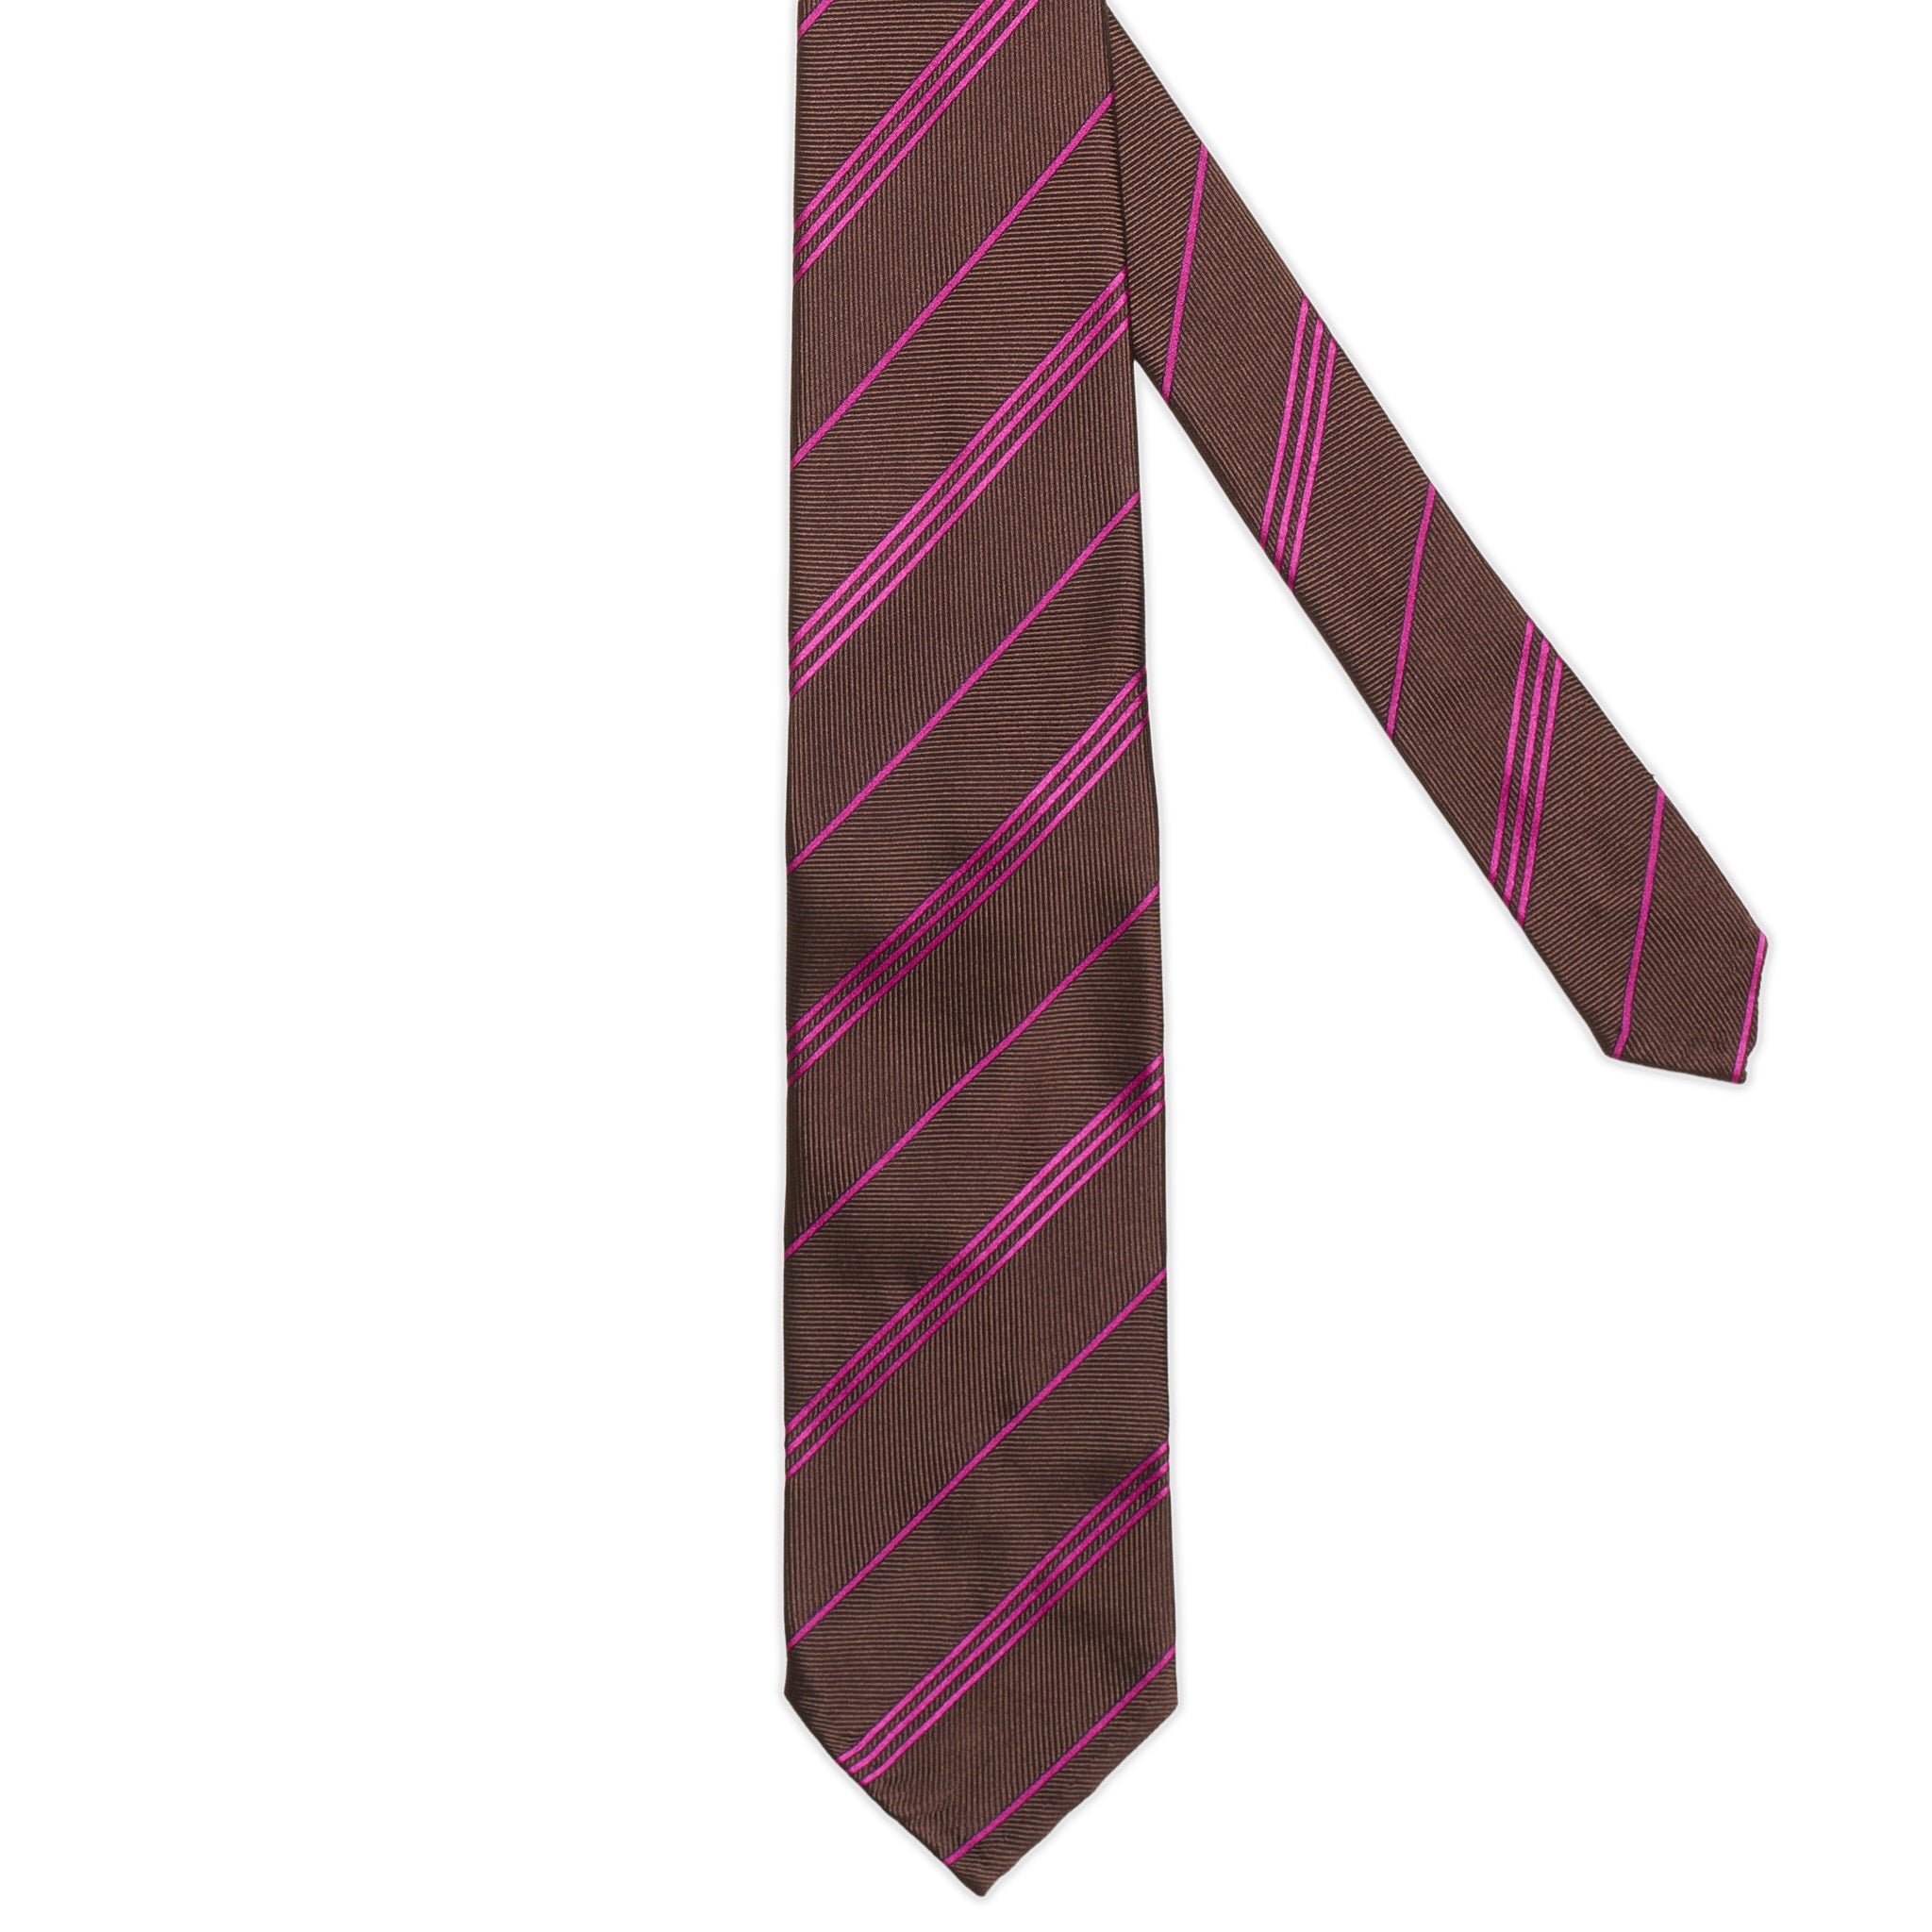 CESARE ATTOLINI Handmade Brown-Purple Striped Unlined Silk Tie NEW